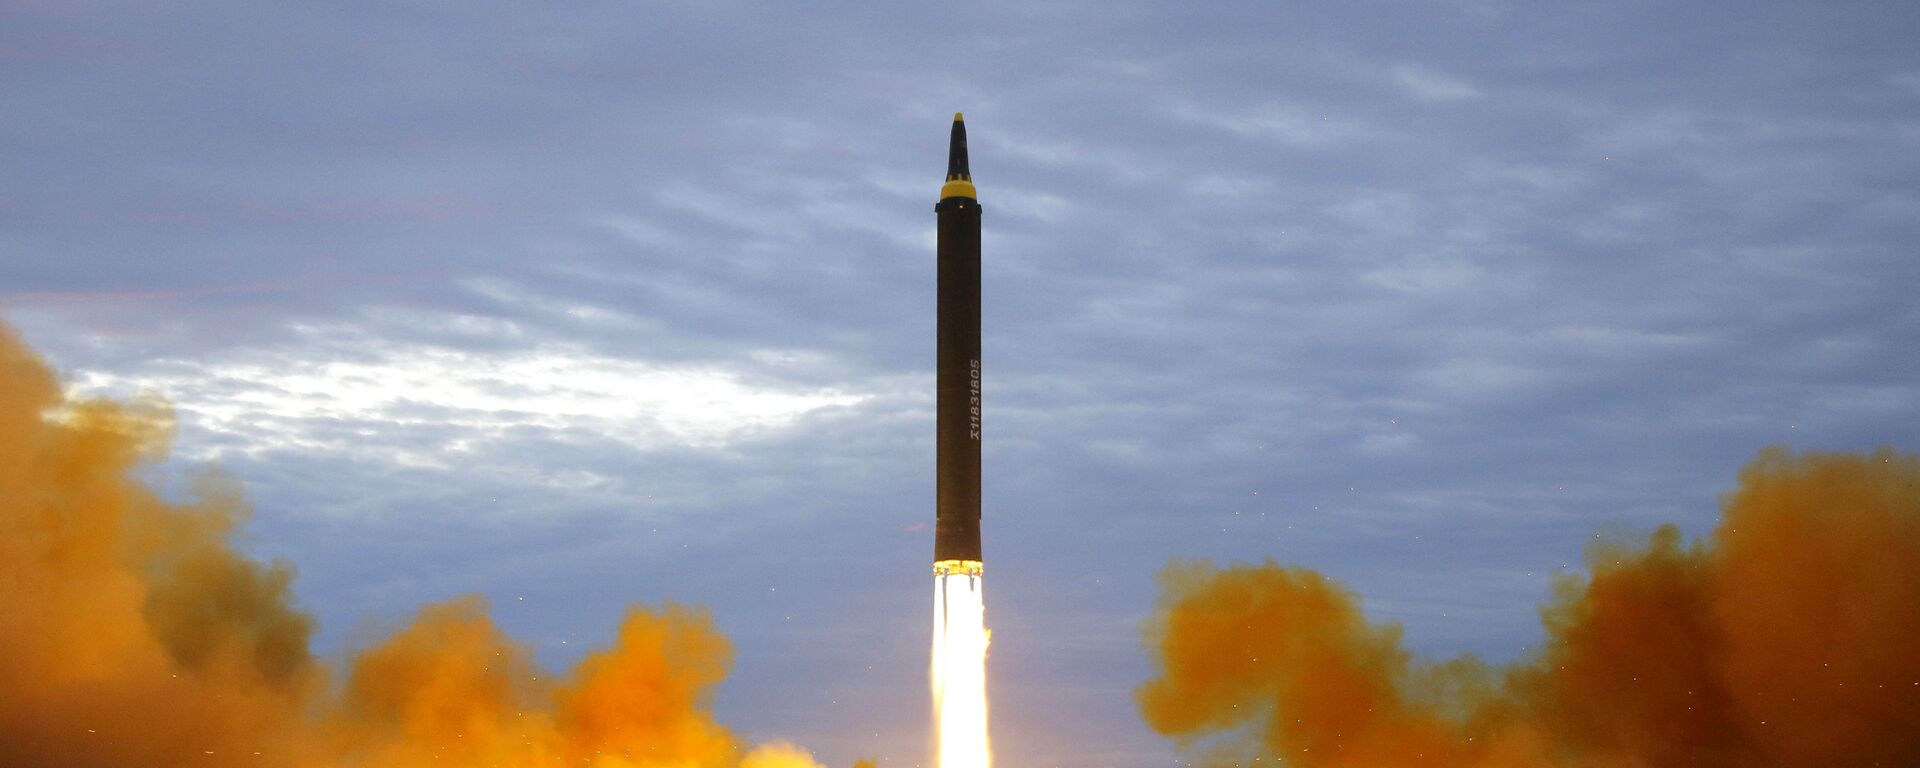 Lanzamiento de un misil por Corea del Norte (archivo) - Sputnik Mundo, 1920, 02.04.2021